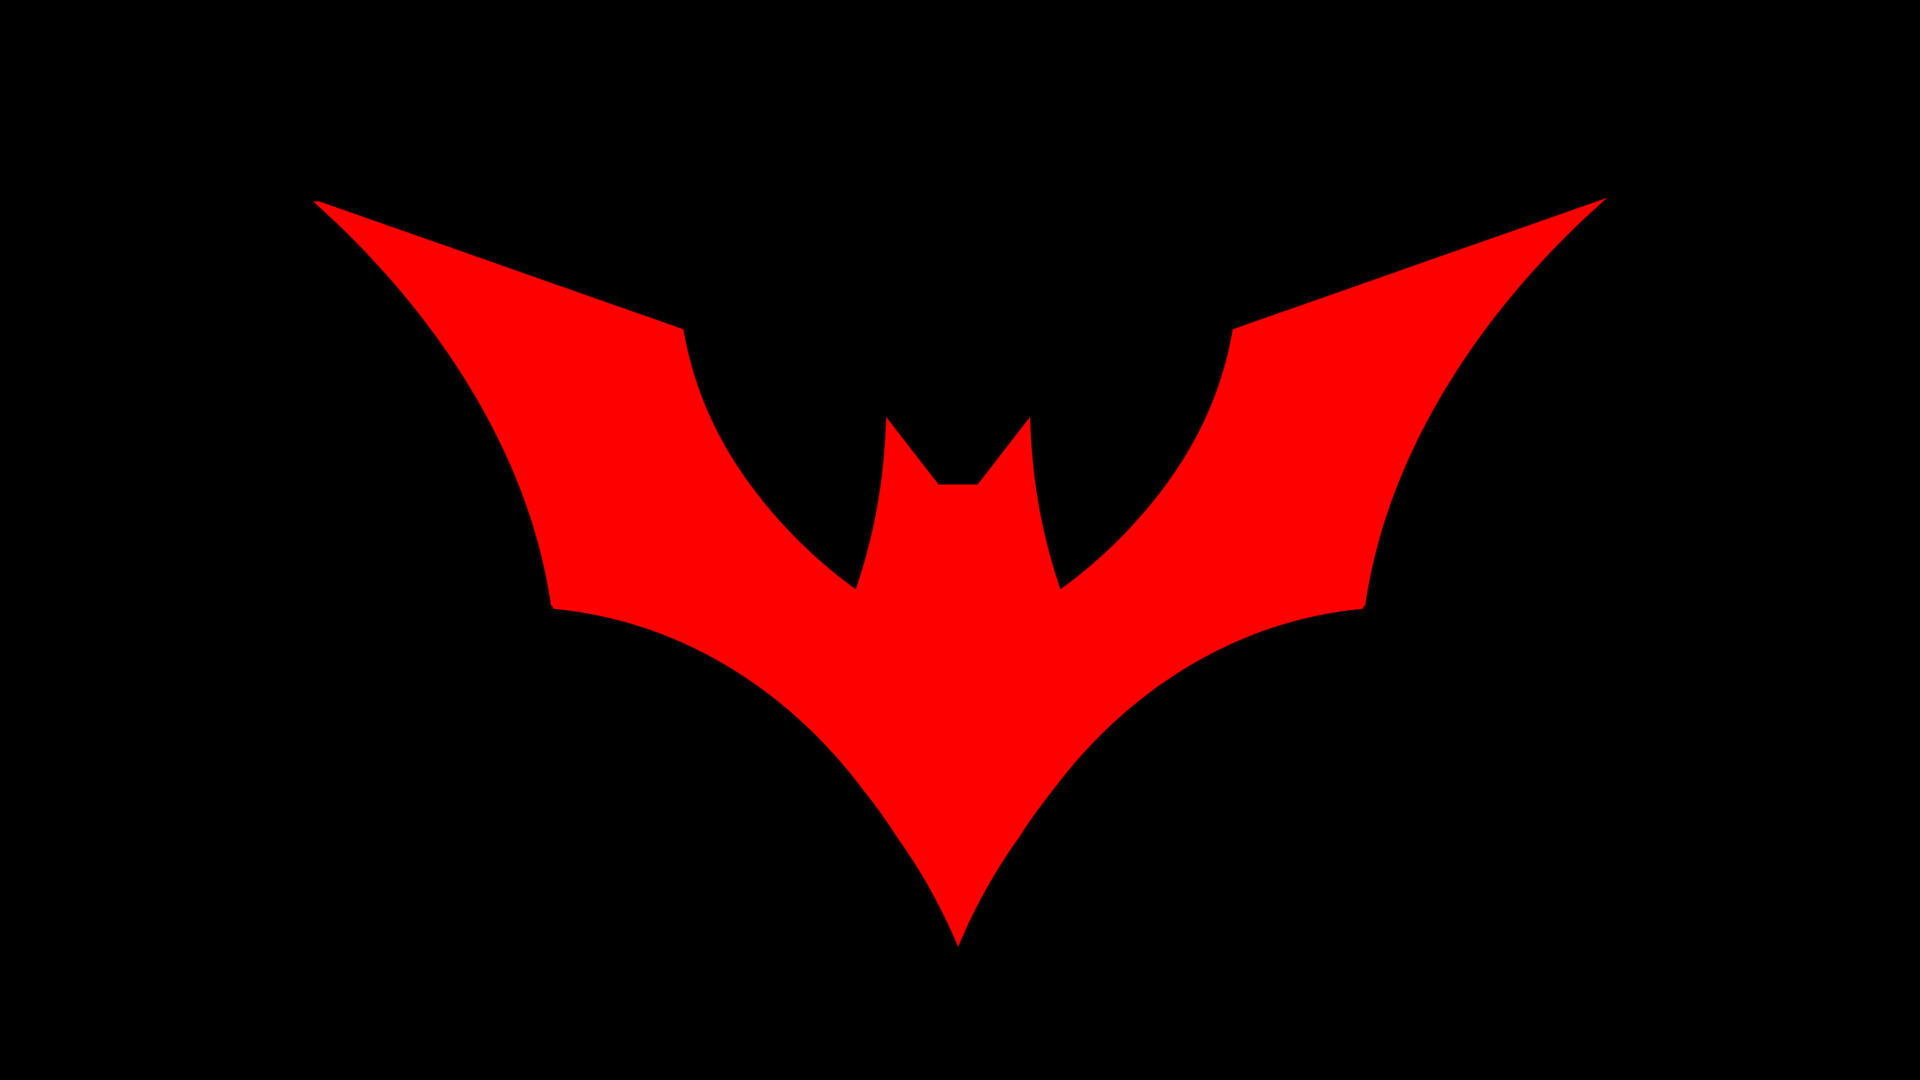 General 1920x1080 Batman Beyond Batman logo DC Comics black background